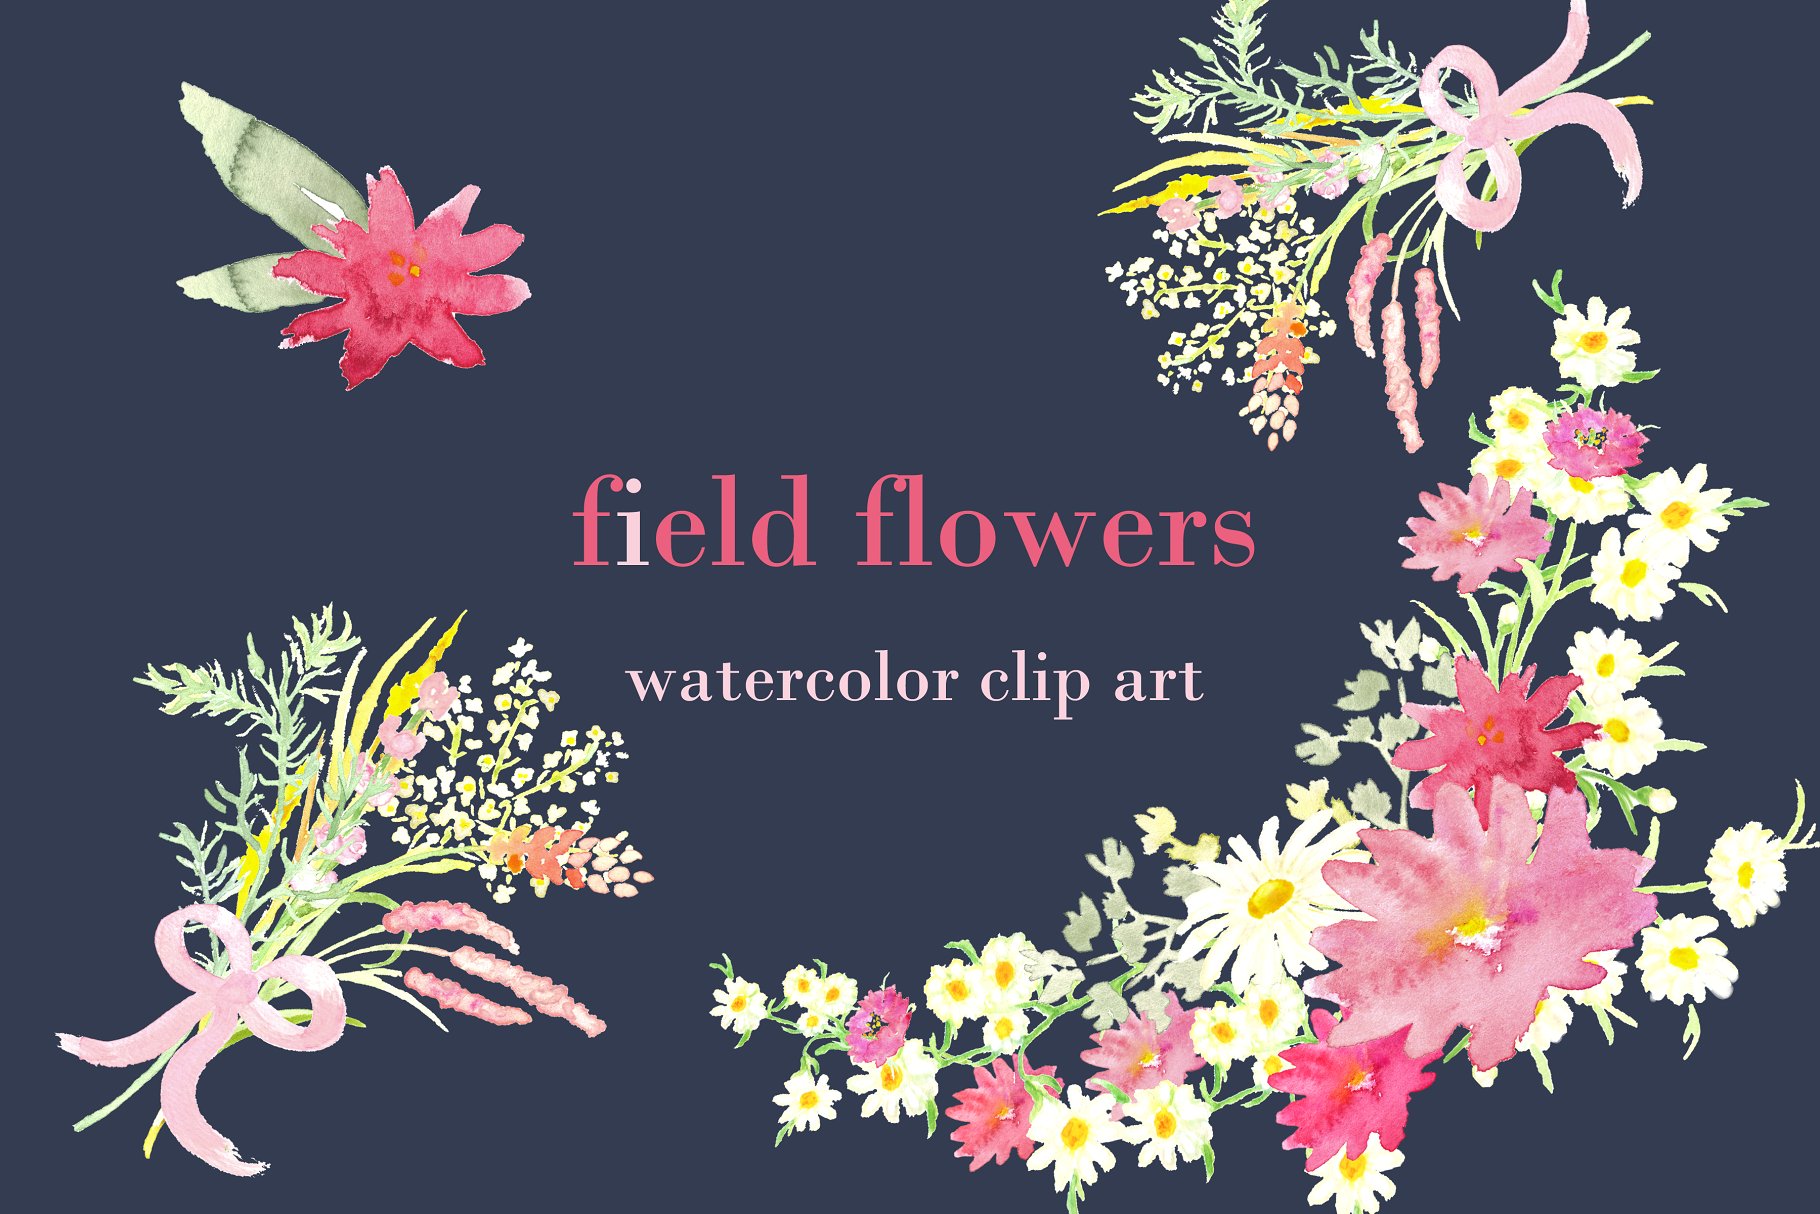 手绘水彩白色雏菊野花剪贴画 Field Flowers watercolor clip art插图